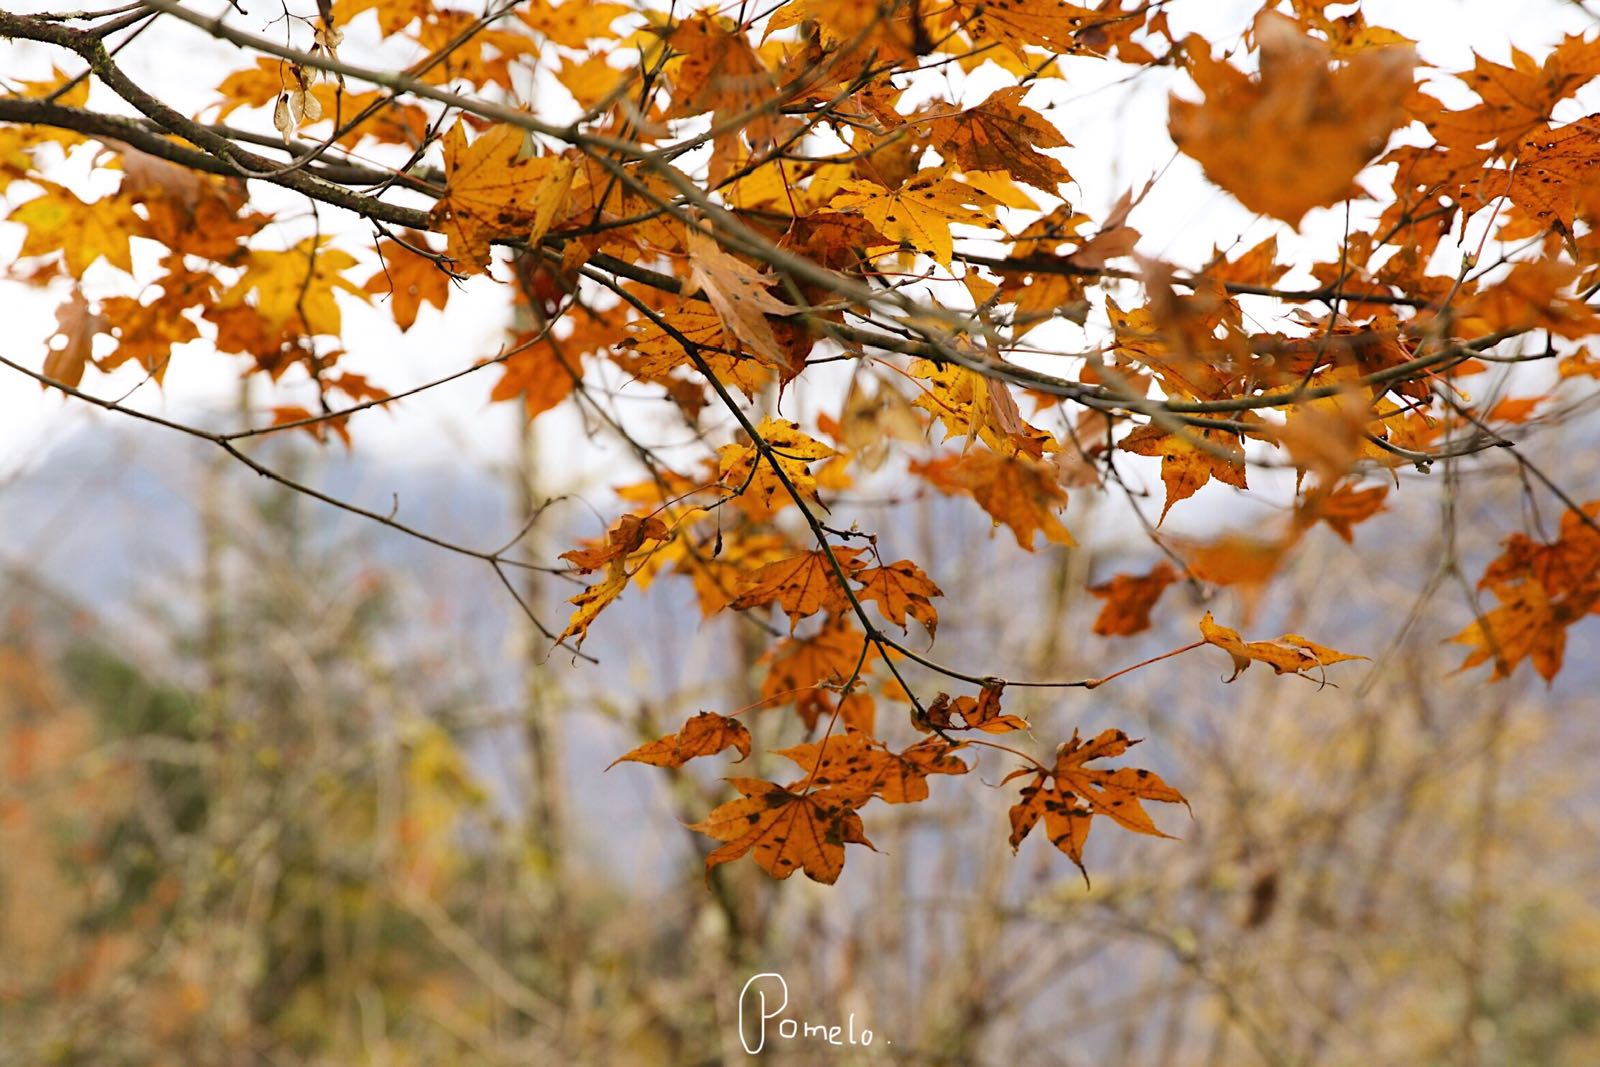 树树皆秋色，山山唯落晖。秋天，不到川西，怎知秋色之美。